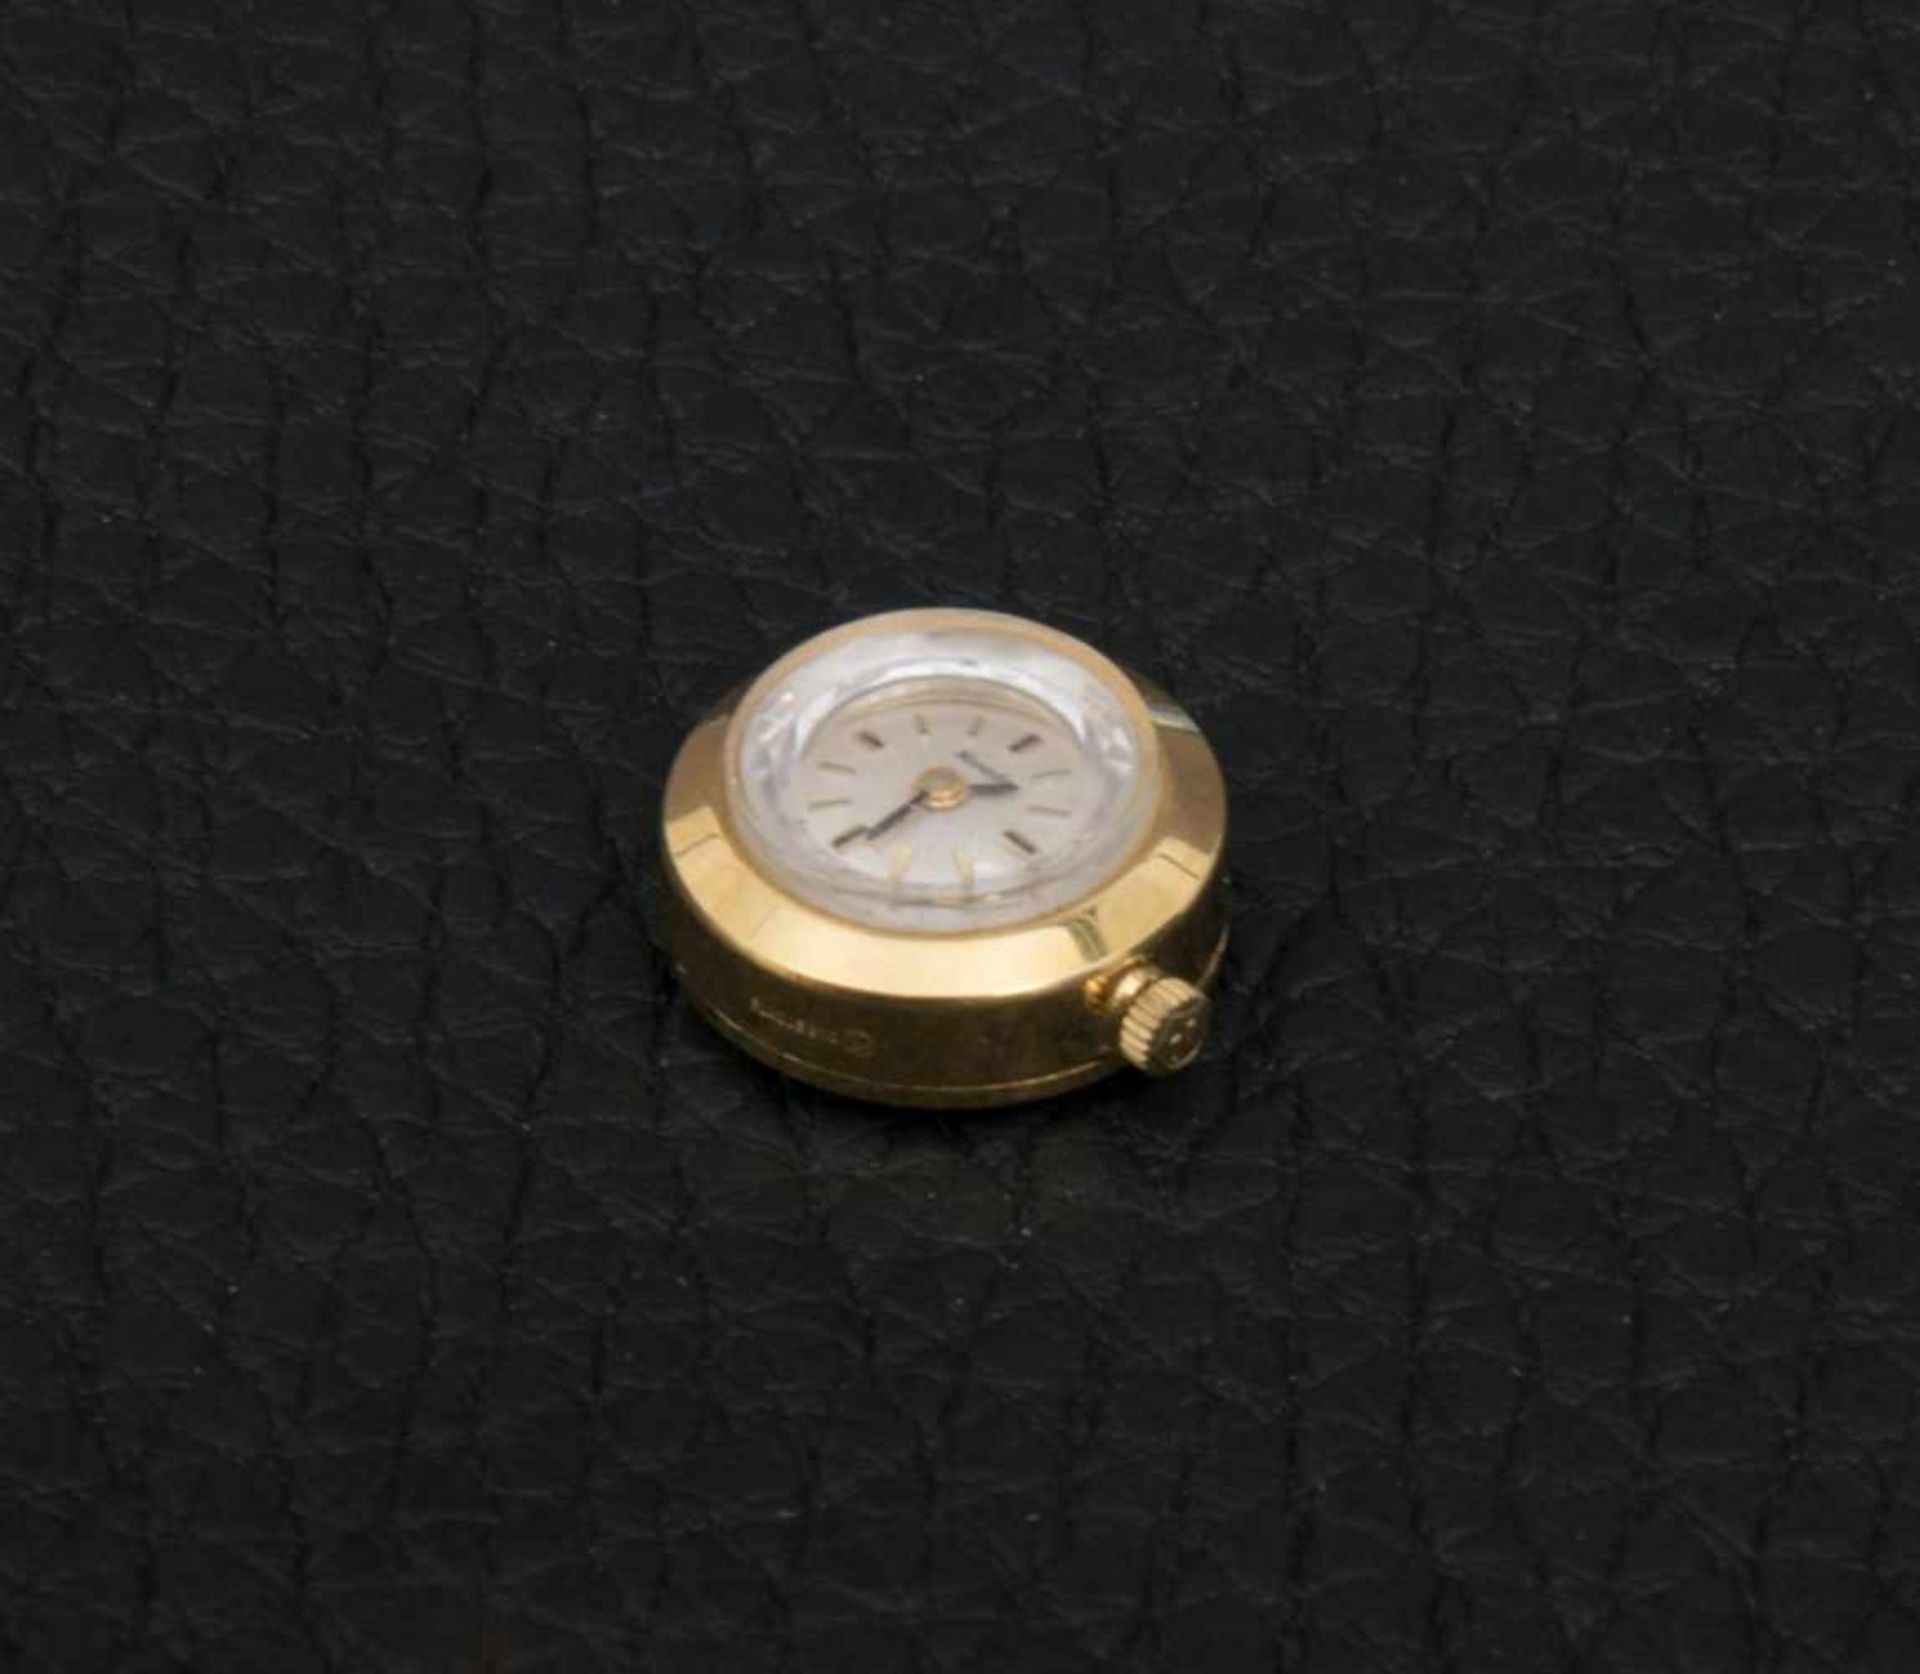 NIVADA "COLORAMA" Damenarmbanduhr der 1960er/70er Jahre, 2(!!!) vergoldete Damenuhren mit - Bild 5 aus 8